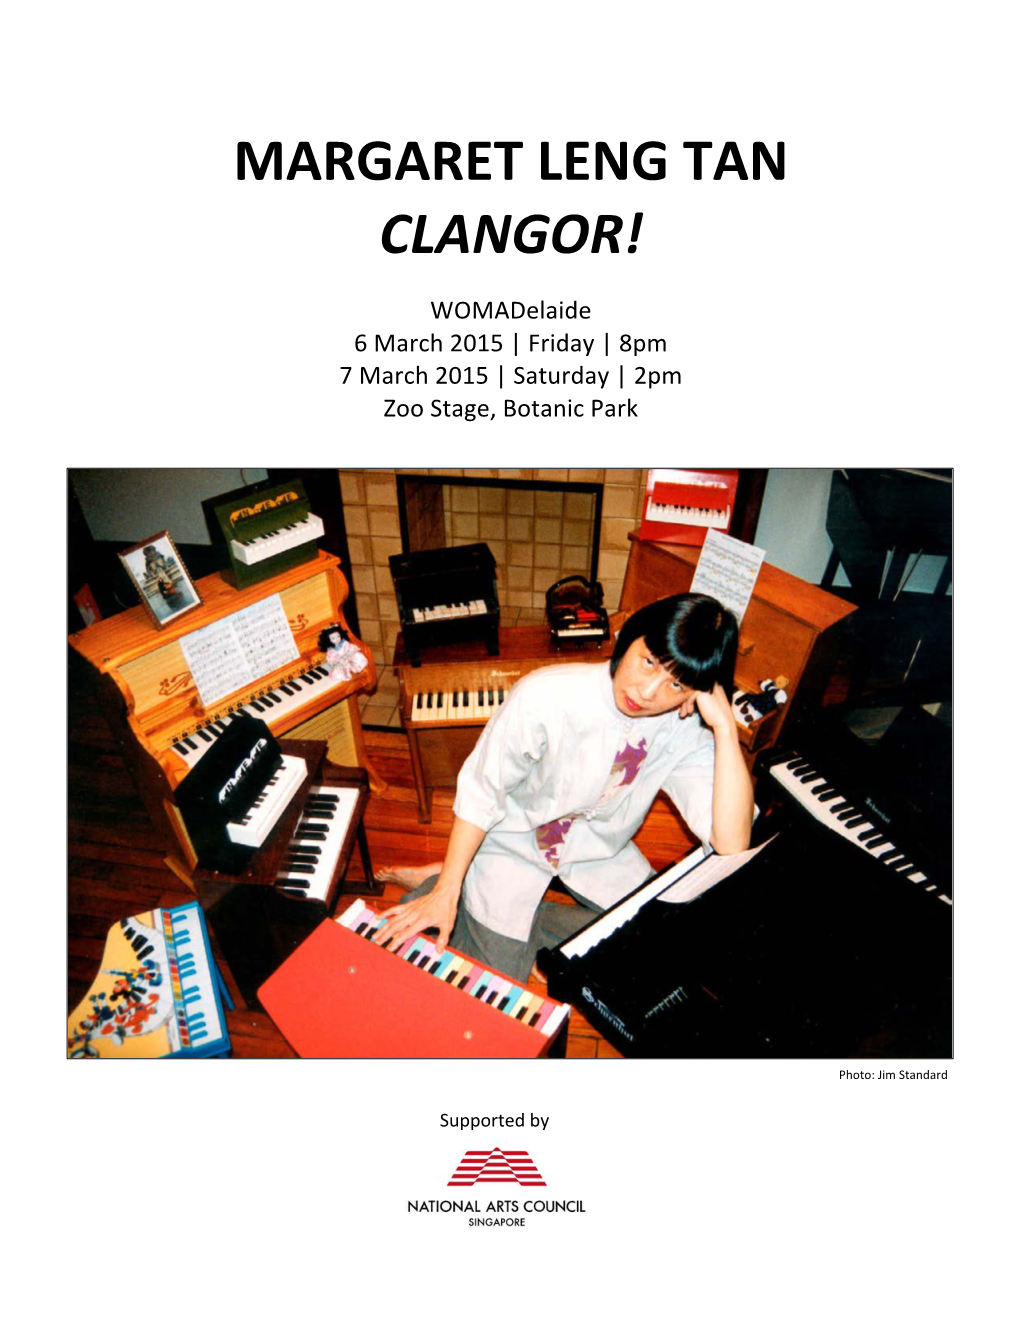 Margaret Leng Tan Clangor!